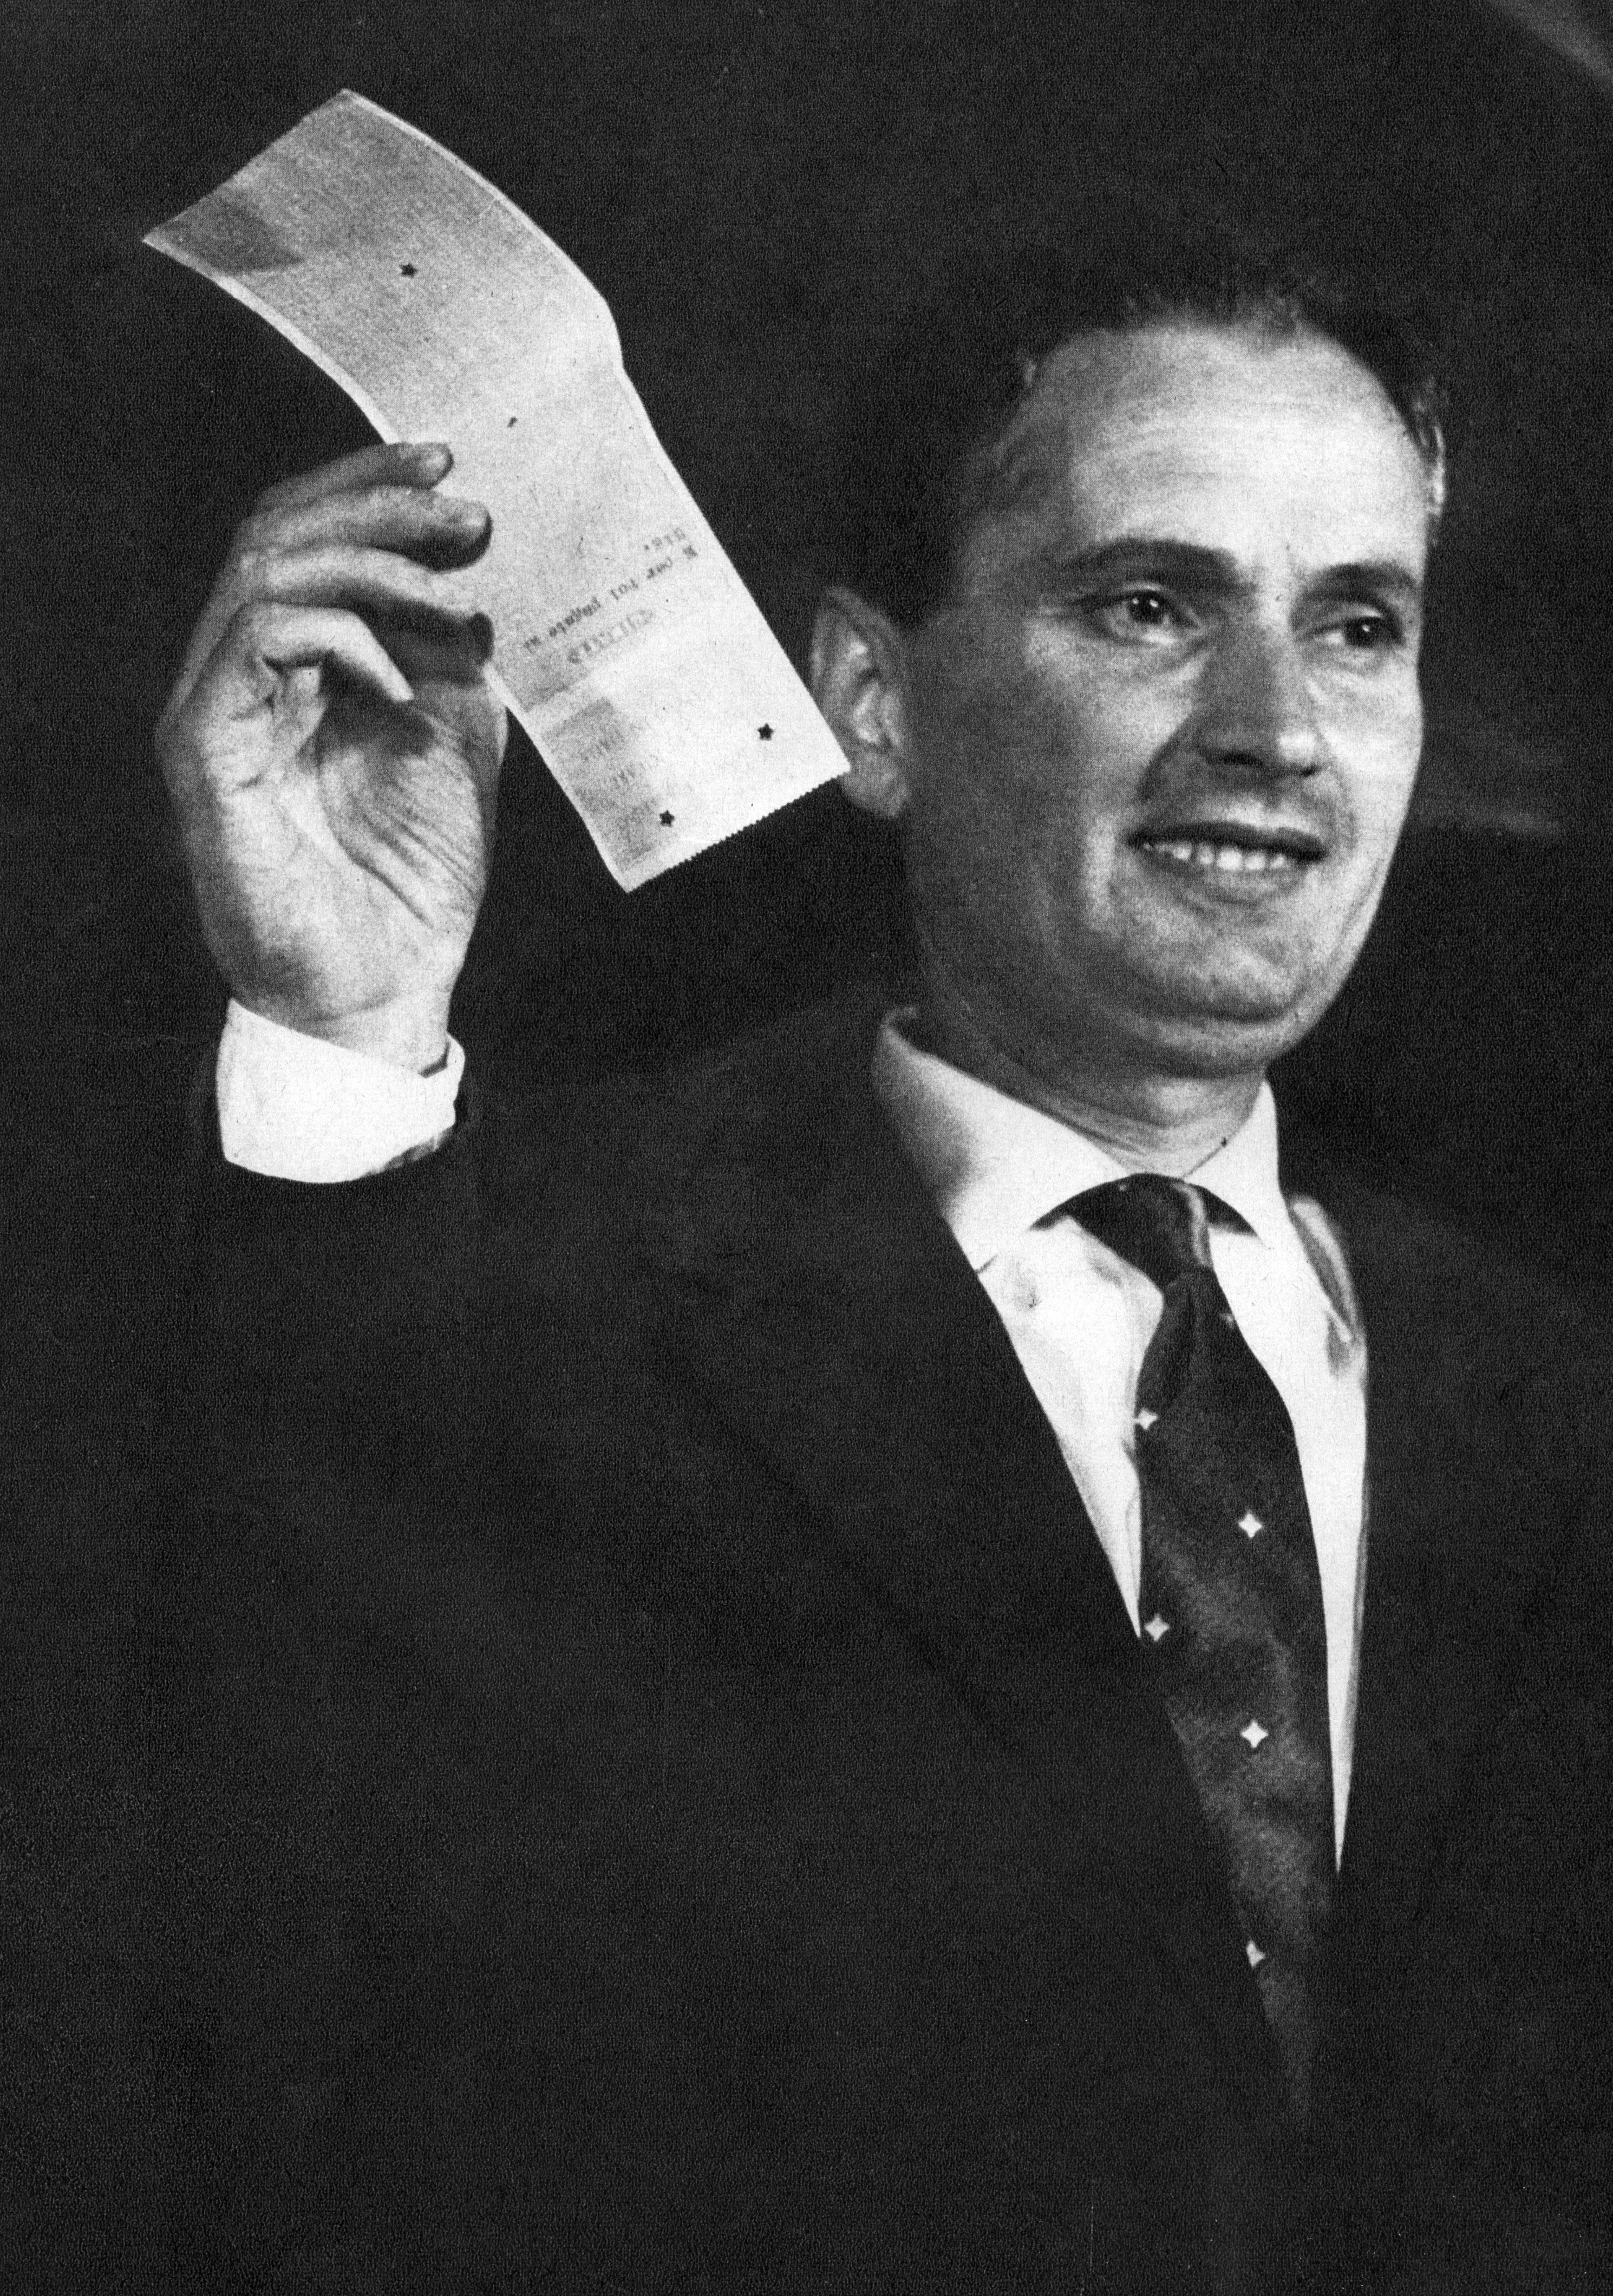 Carlo Cassola, vincitore Premio Strega 1960 con il libro La ragazza di Bube